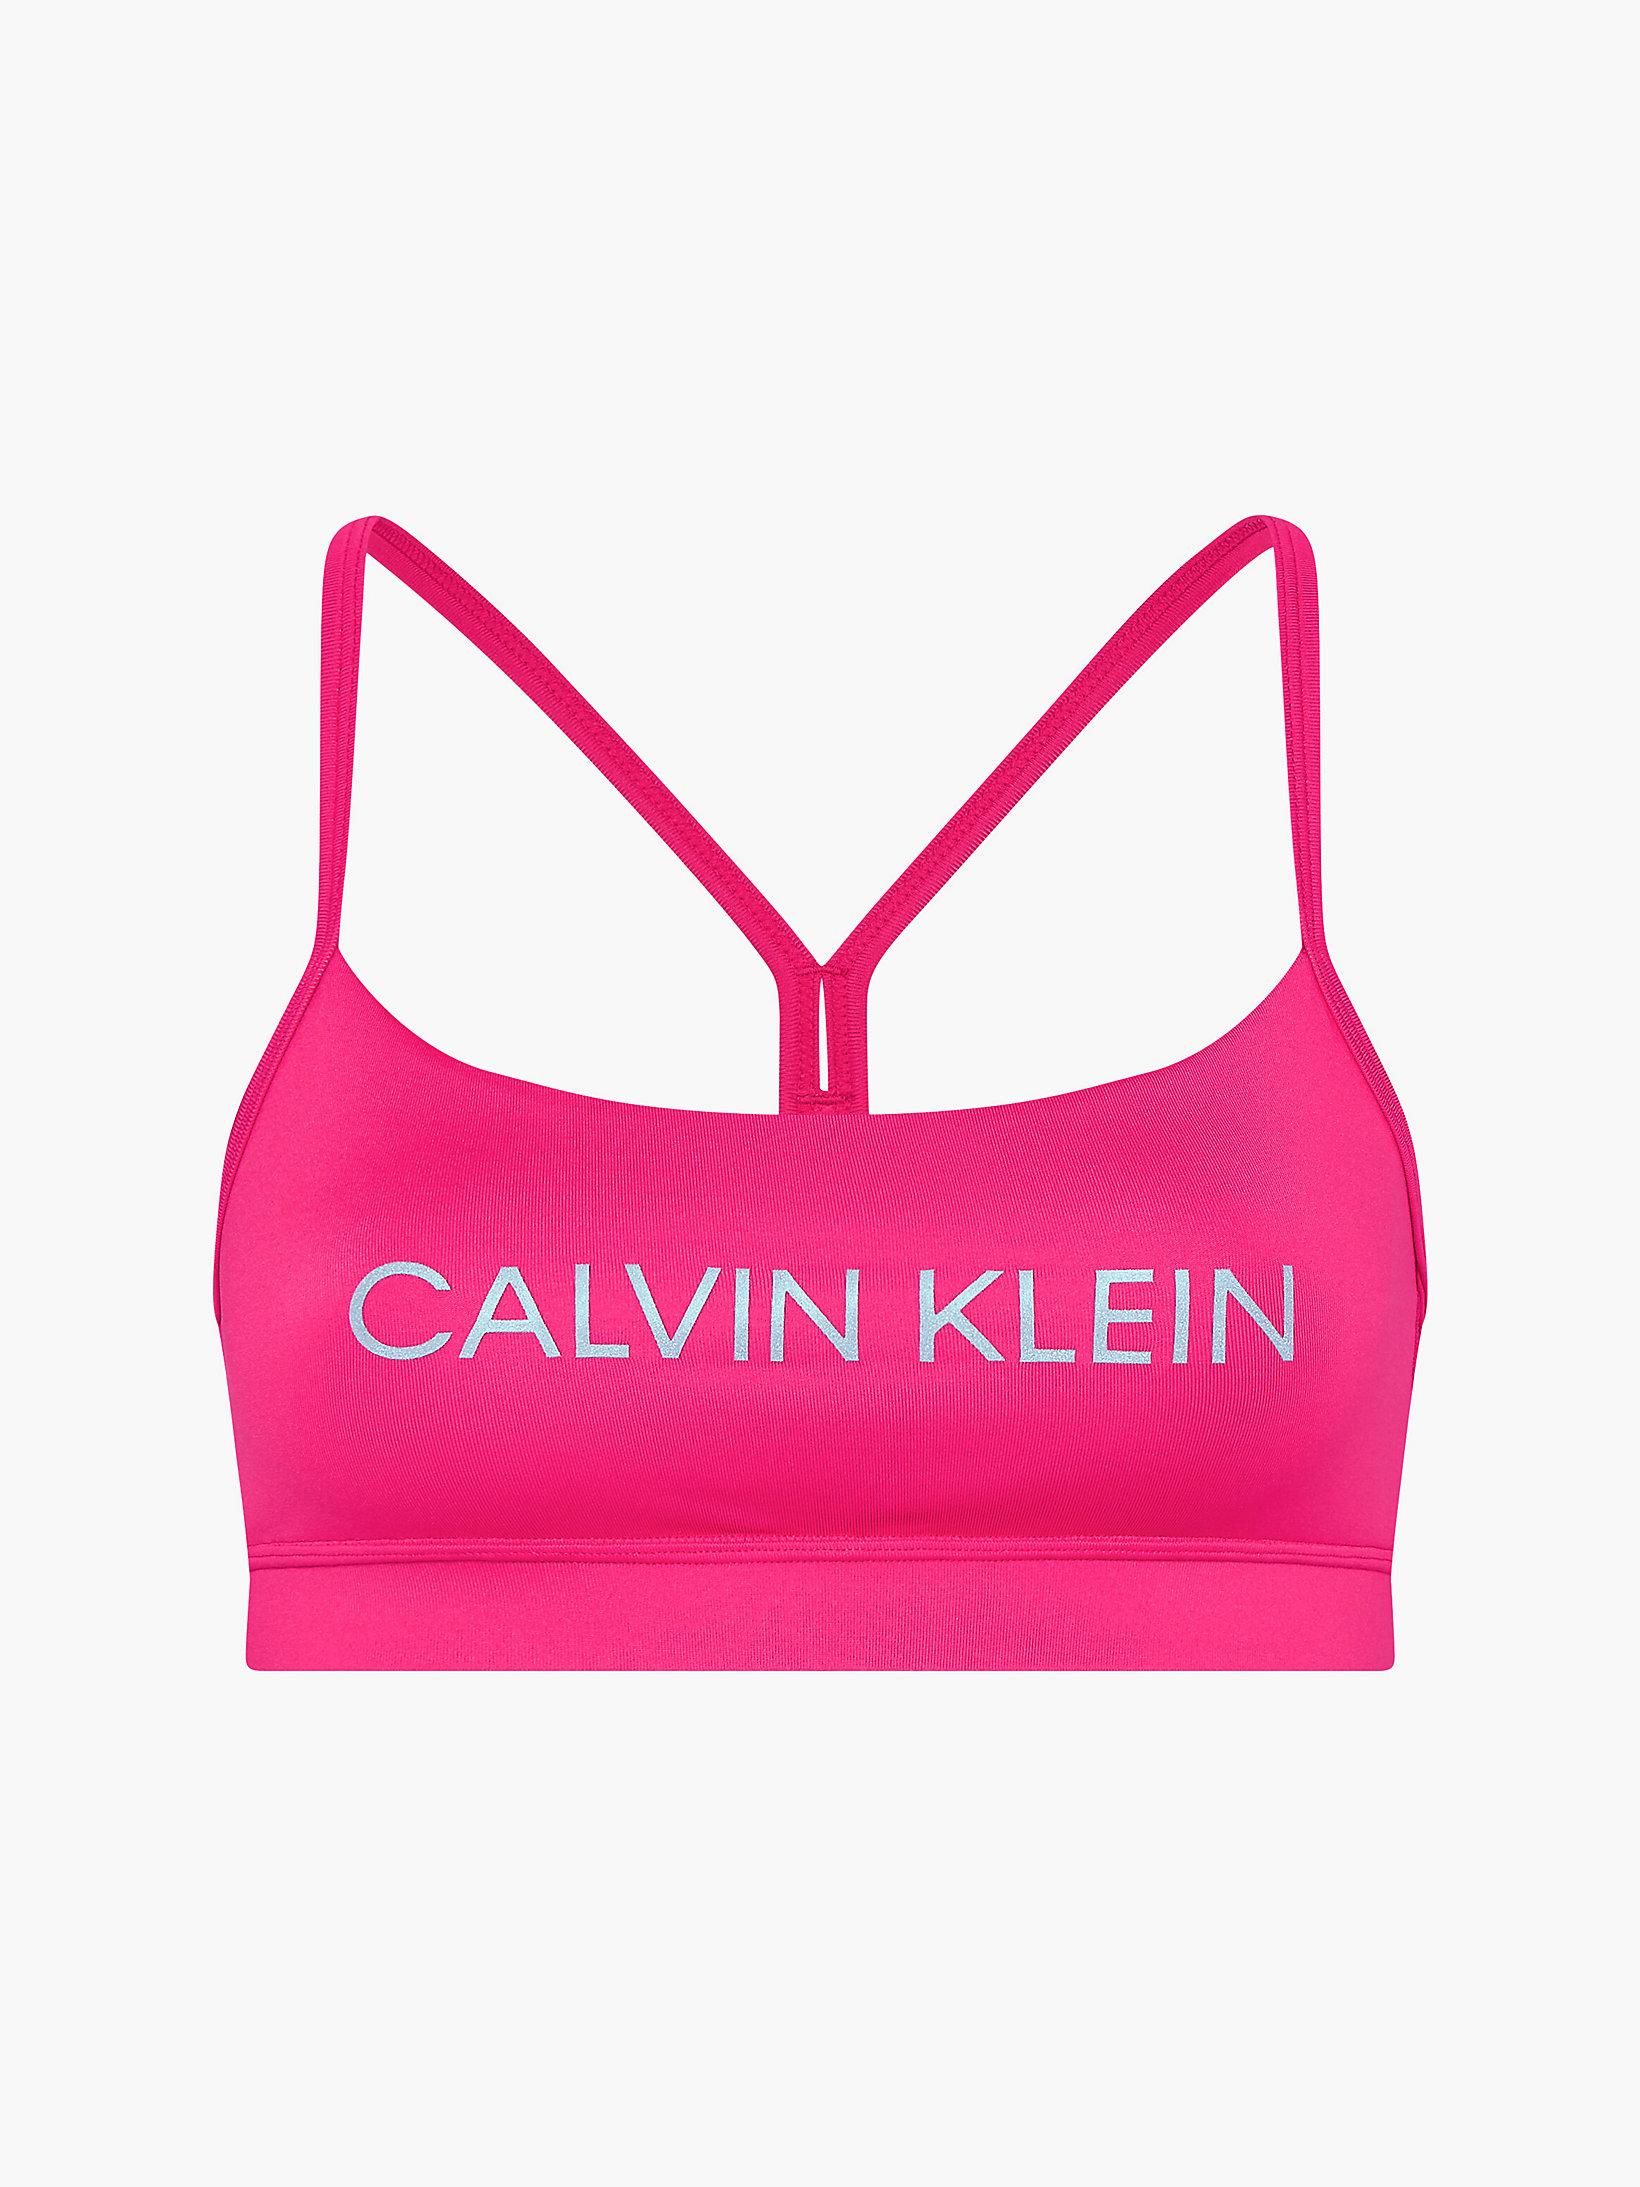 Calvin Klein Sport-Bh Für Geringe Intensität in Pink | Lyst DE